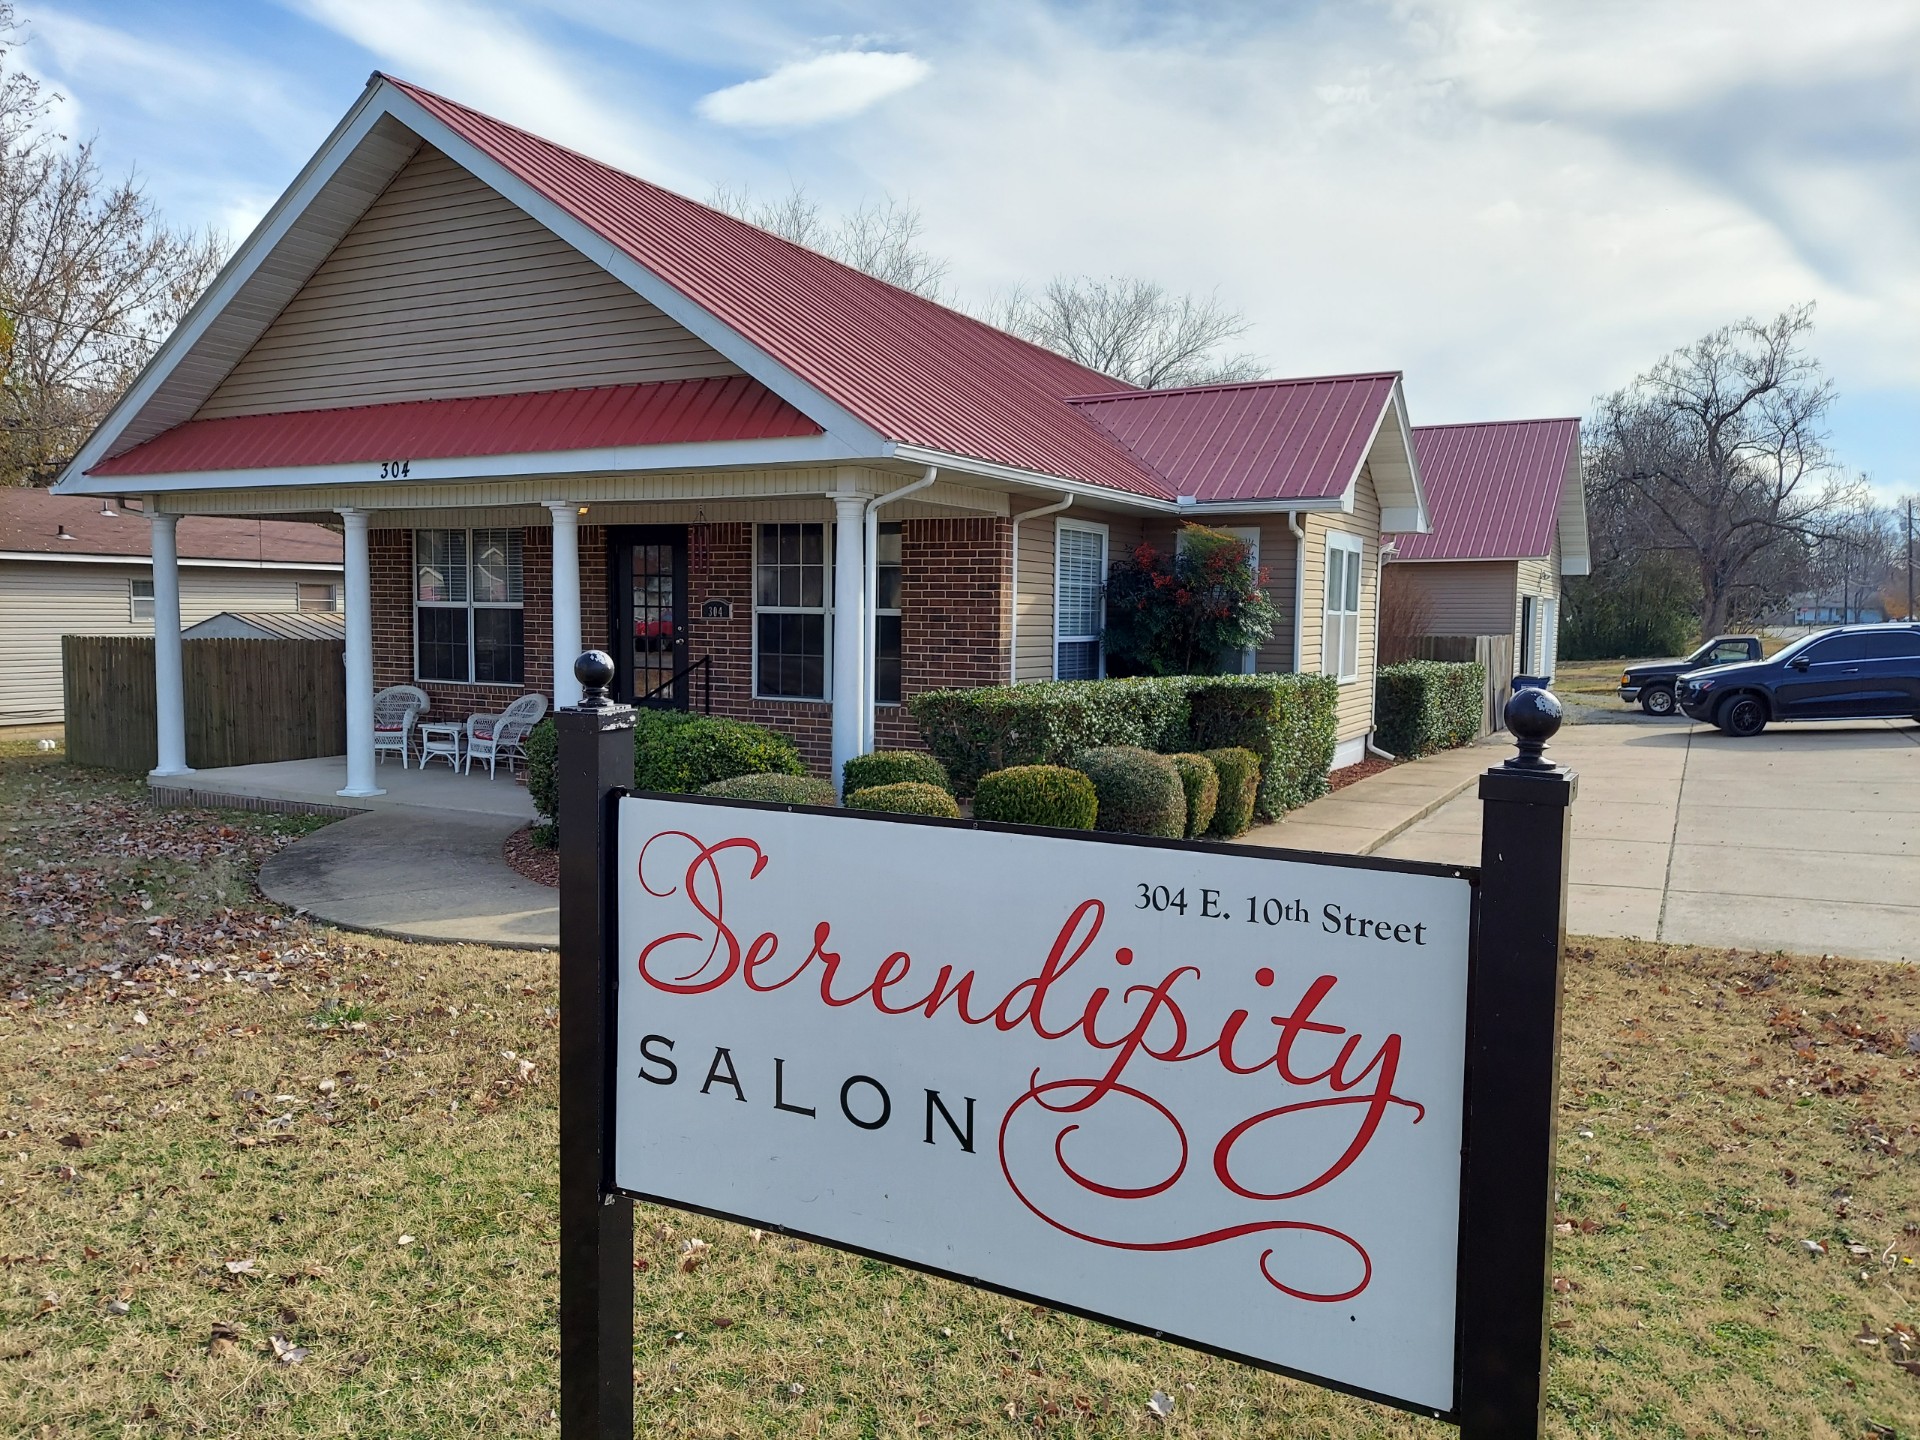 Serendipity Salon & Studio